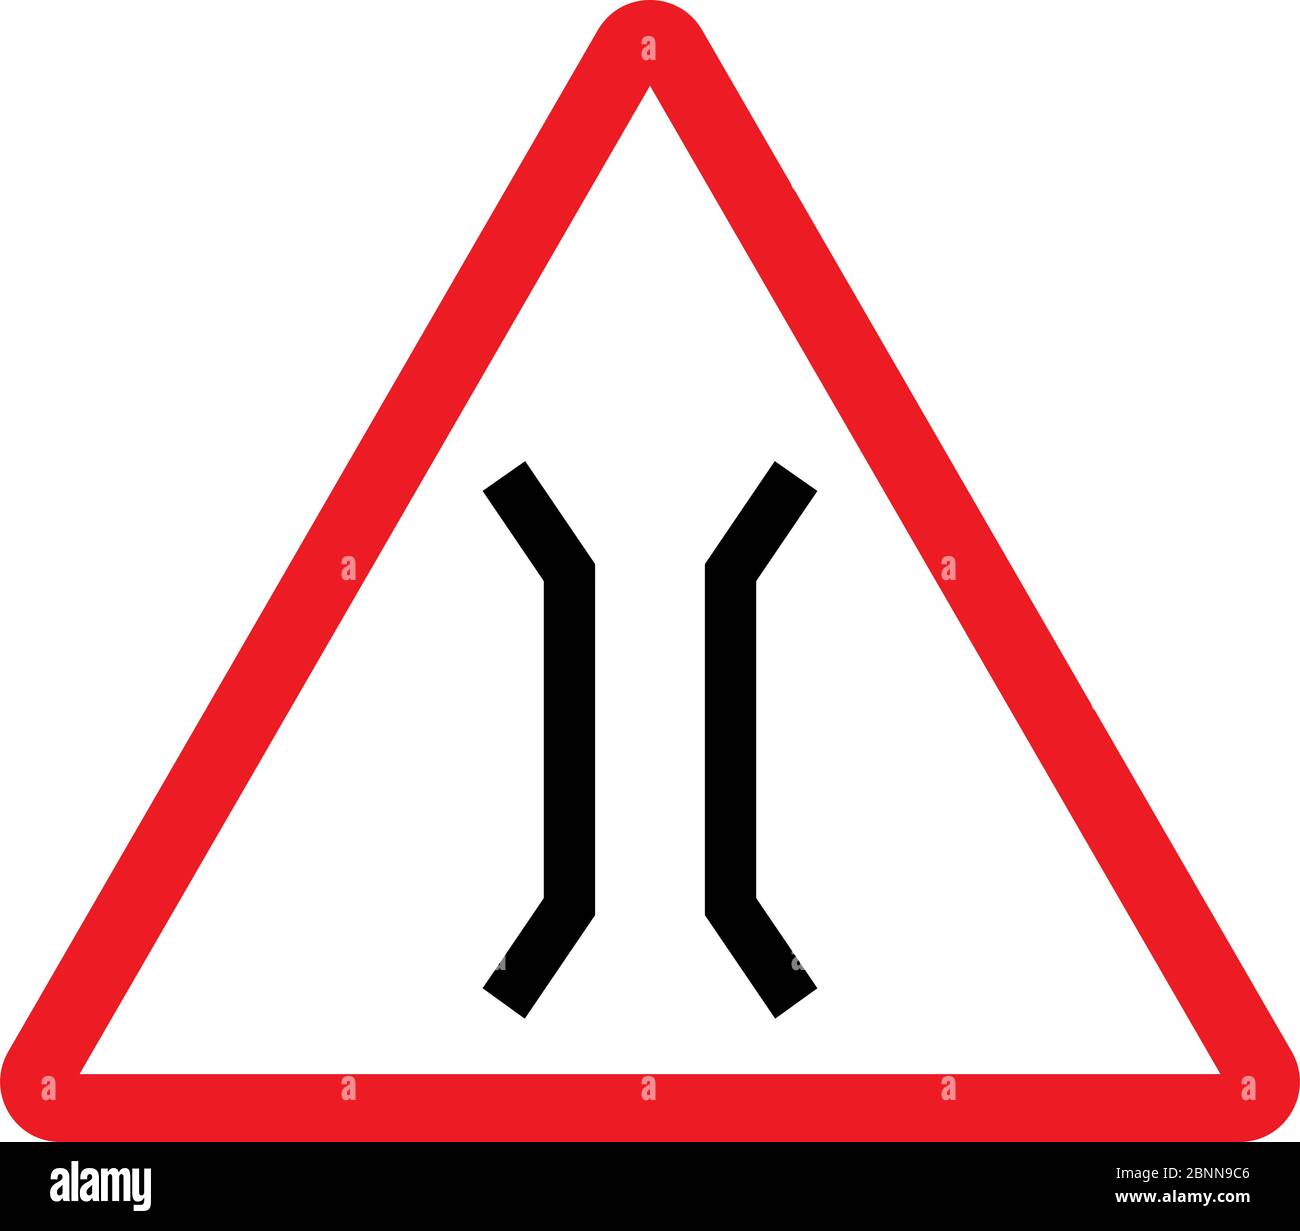 Vector de señal de tráfico de puente estrecho. Fondo de triángulo rojo. Ilustración del Vector